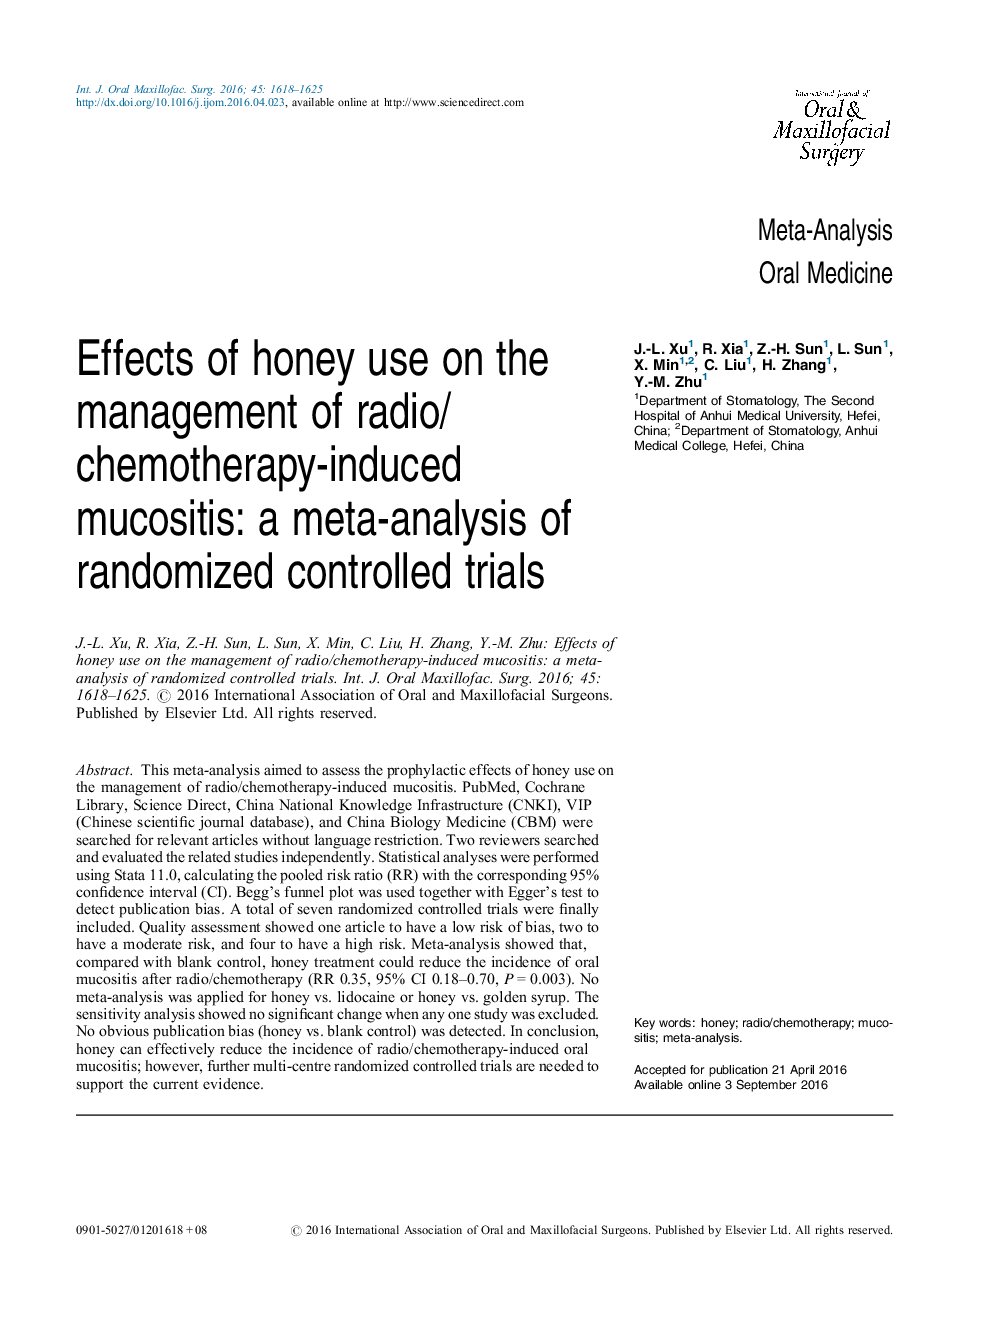 اثرات استفاده از عسل بر مدیریت موکوزیت ناشی از رادیو / شیمی درمانی: یک متاآنالیز آزمایشهای کنترل شده تصادفی 